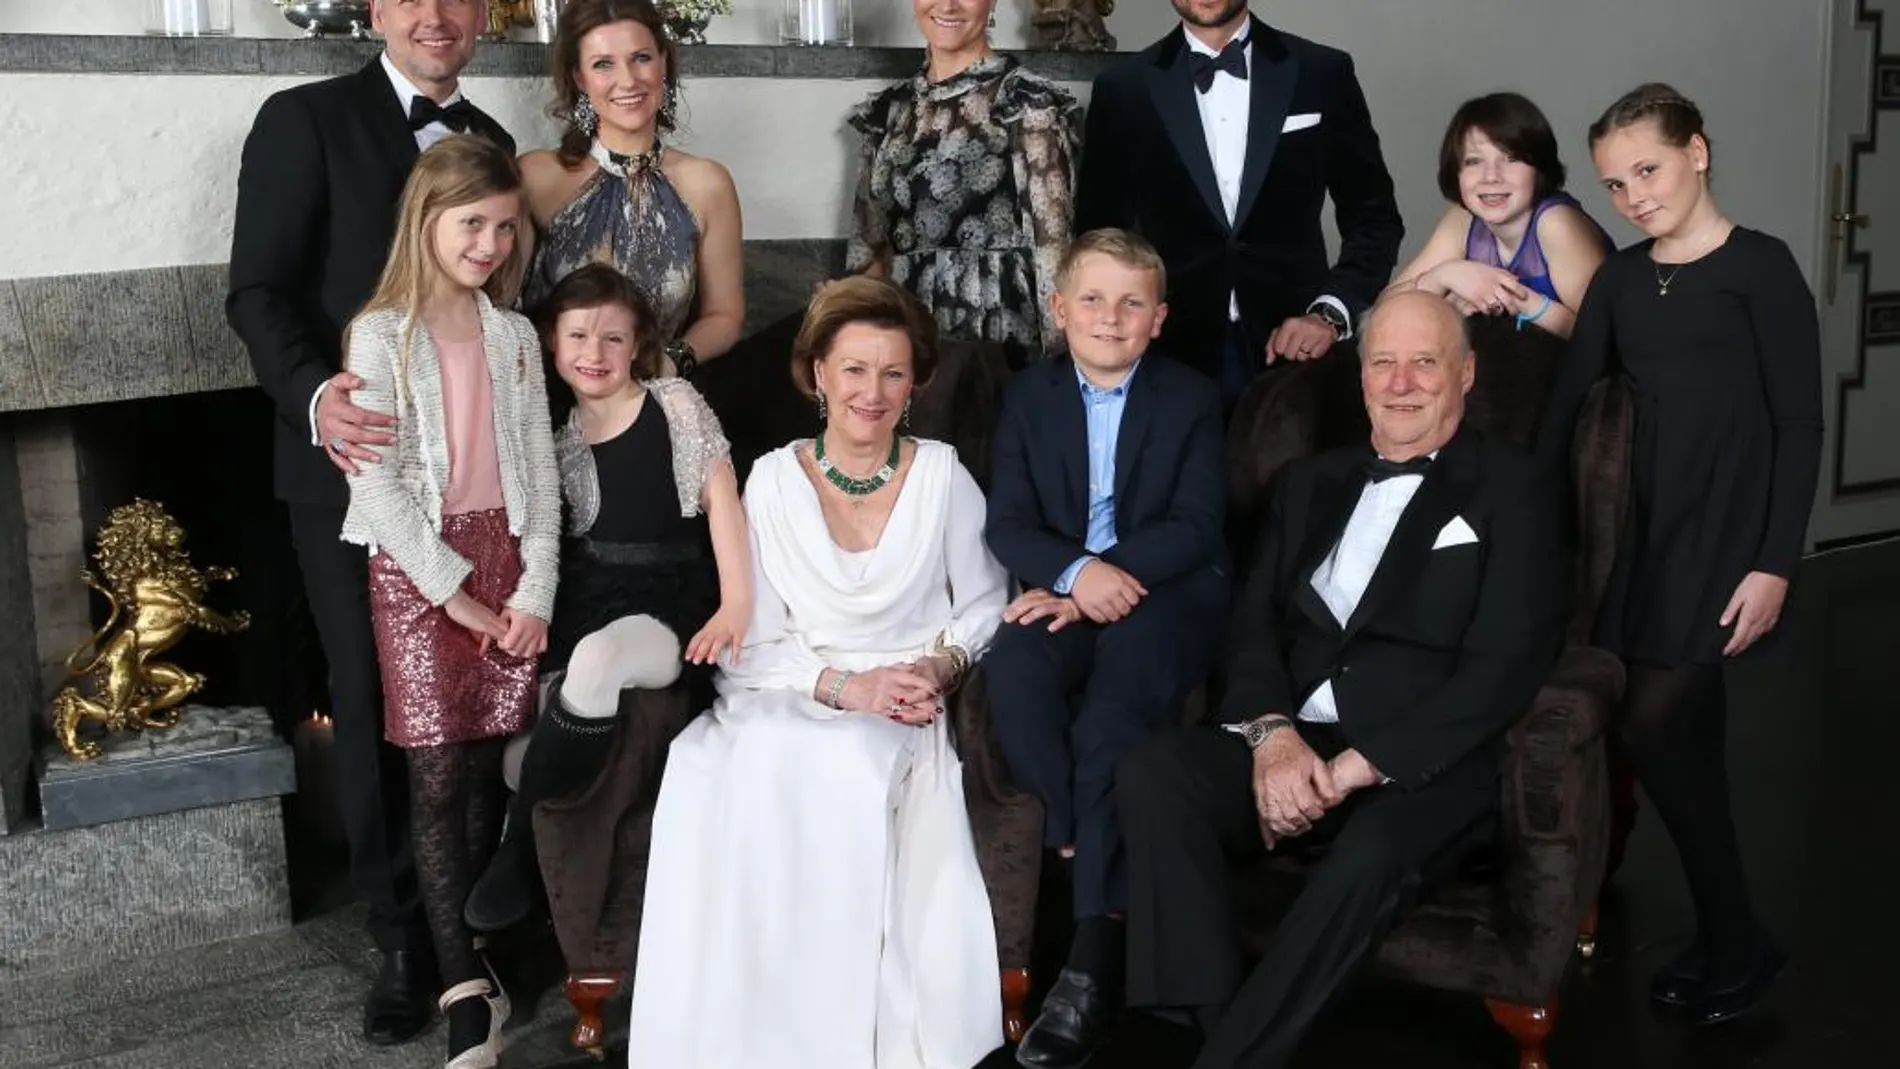 La falilia real de Noruega celebra el 25 aniversario en el trono del rey Harald